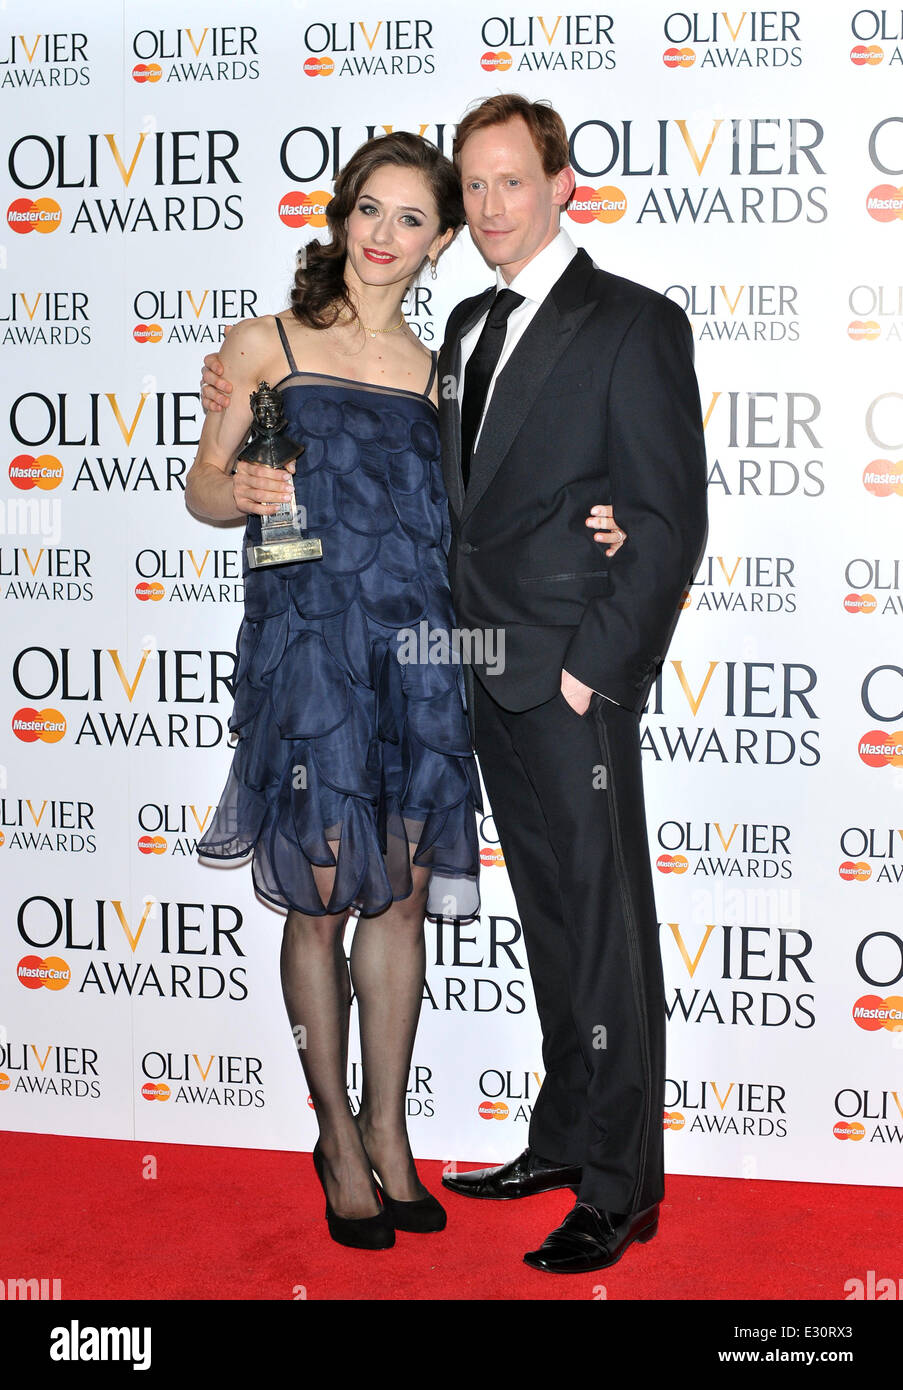 Die Olivier Awards statt an der Königlichen Opernhaus - Drucksaal mit: Marianela Nunez, Ed Watson wo: London, Vereinigtes Königreich bei: 28. April 2013 Stockfoto